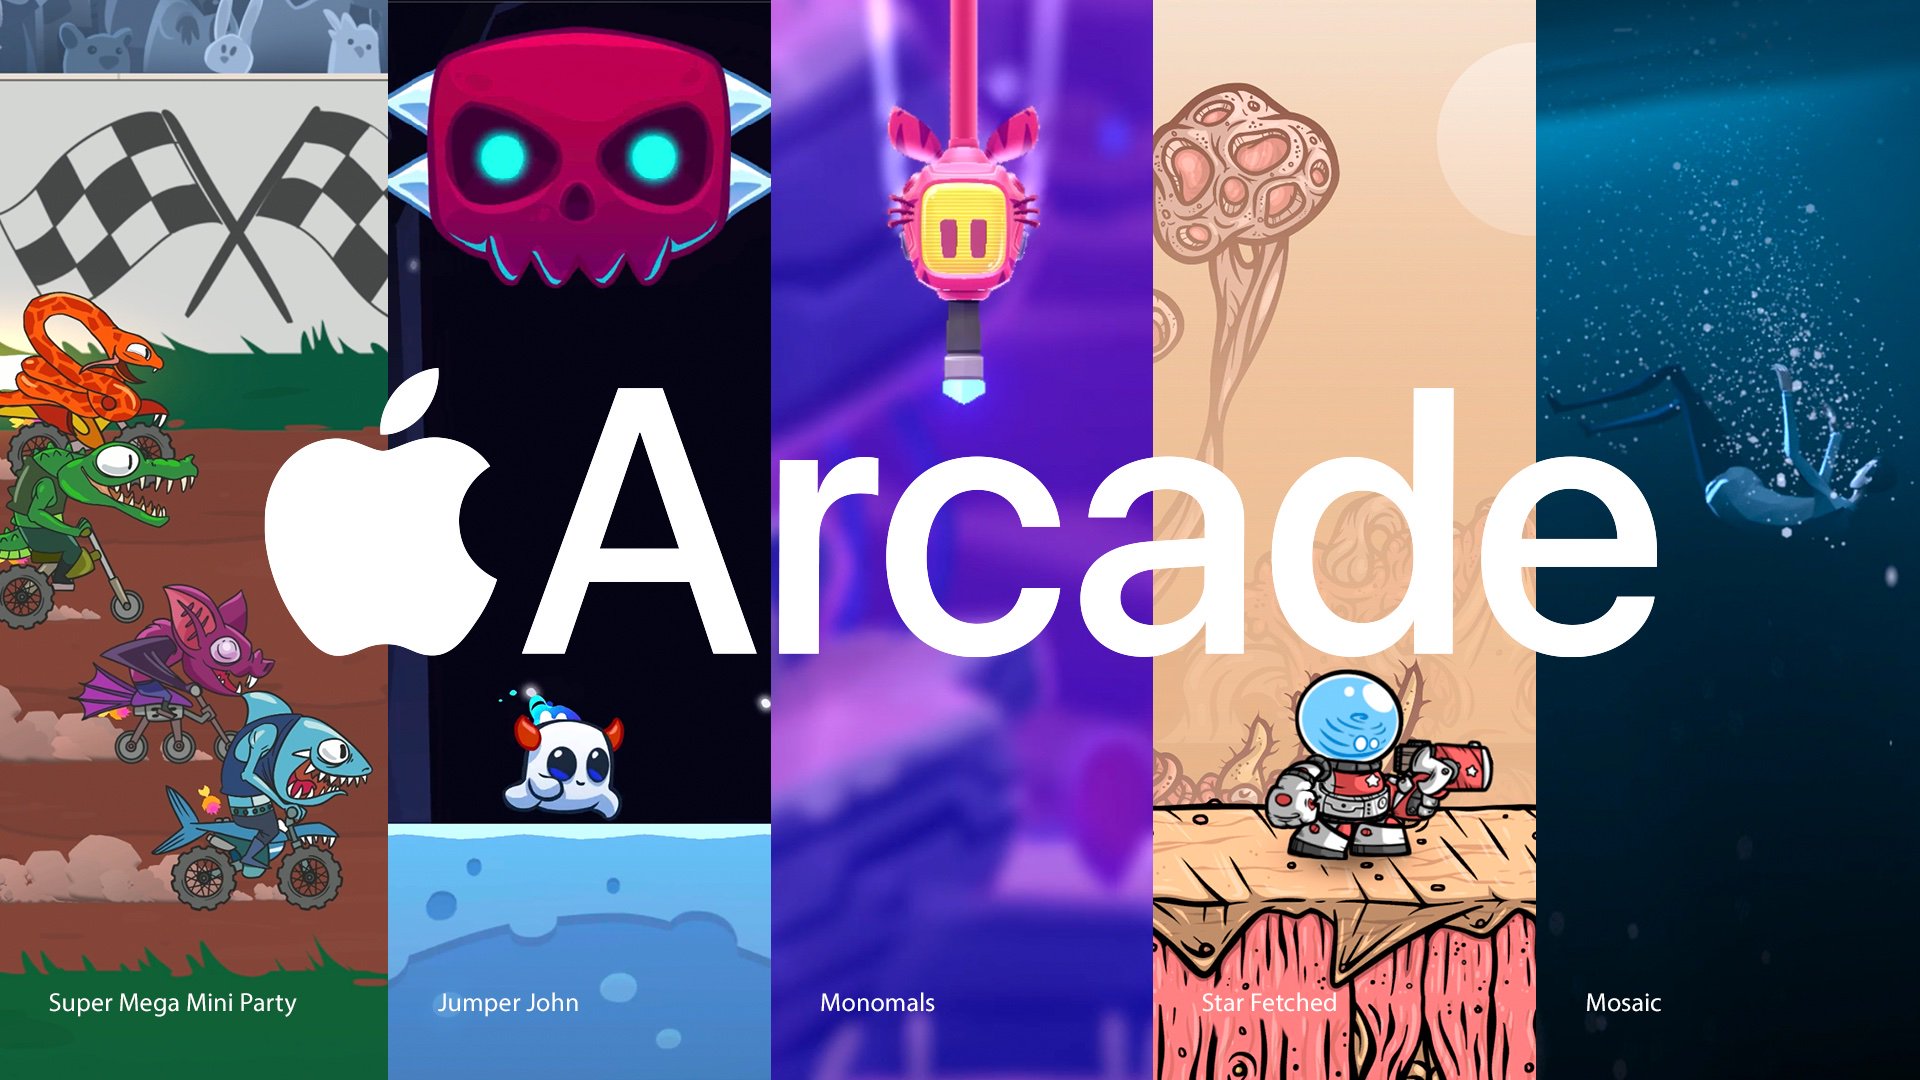 Apple Arcade võitis 5 uut mängu, sealhulgas Super Mega Mini Party ja The Mosaic